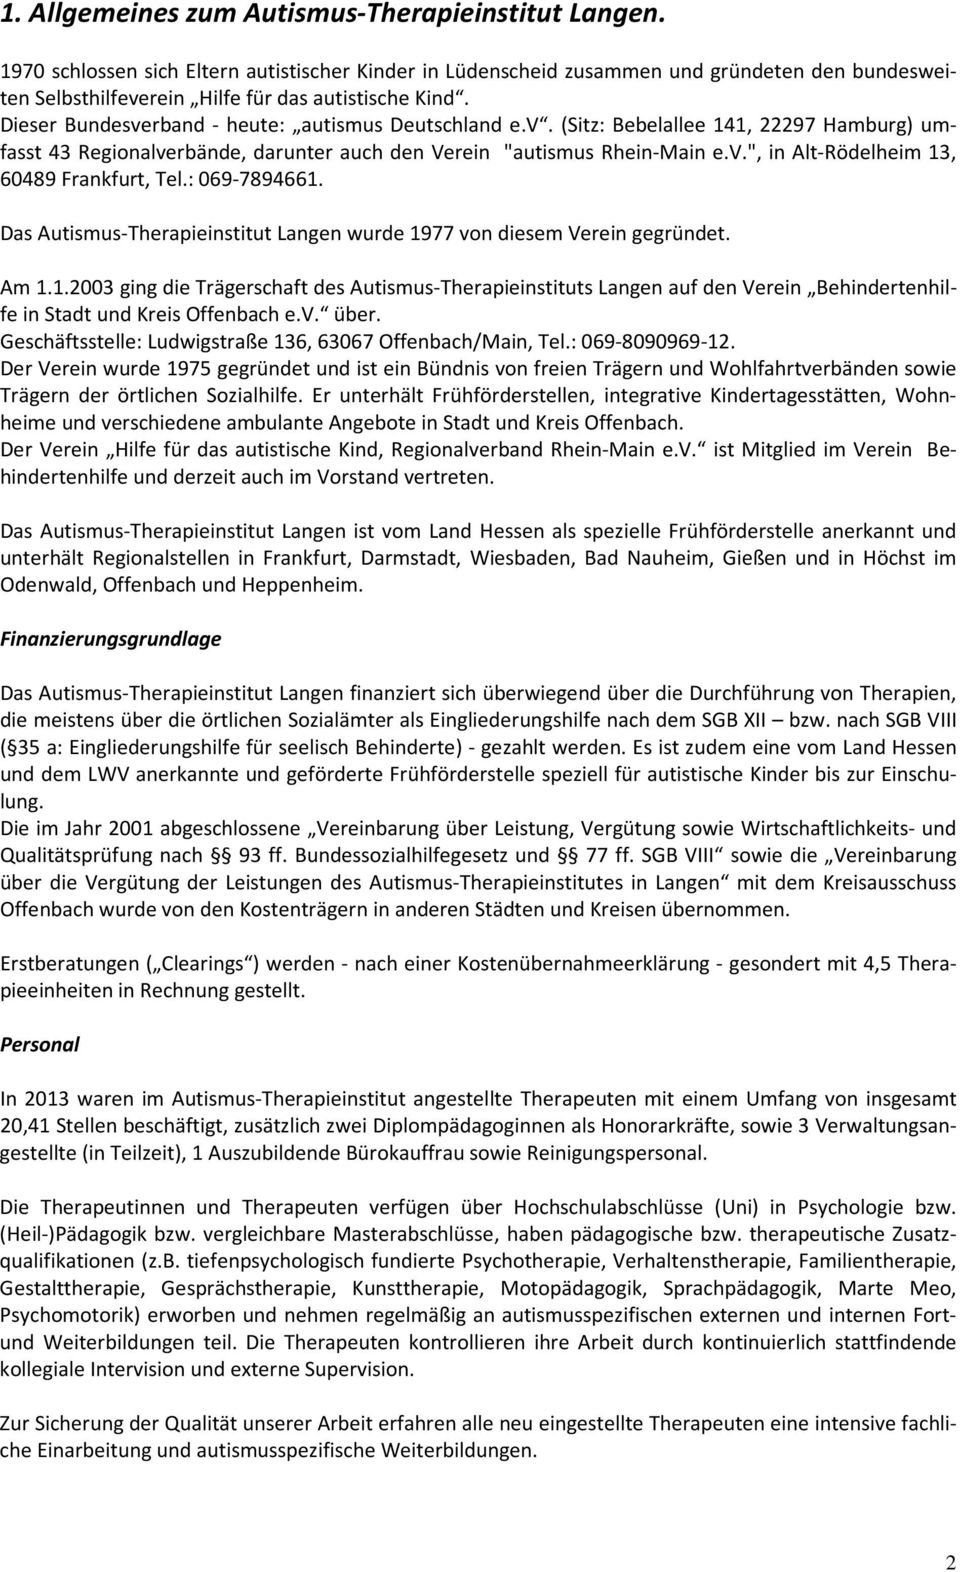 Dieser Bundesverband - heute: autismus Deutschland e.v. (Sitz: Bebelallee 141, 22297 Hamburg) umfasst 43 Regionalverbände, darunter auch den Verein "autismus Rhein-Main e.v.", in Alt-Rödelheim 13, 60489 Frankfurt, Tel.